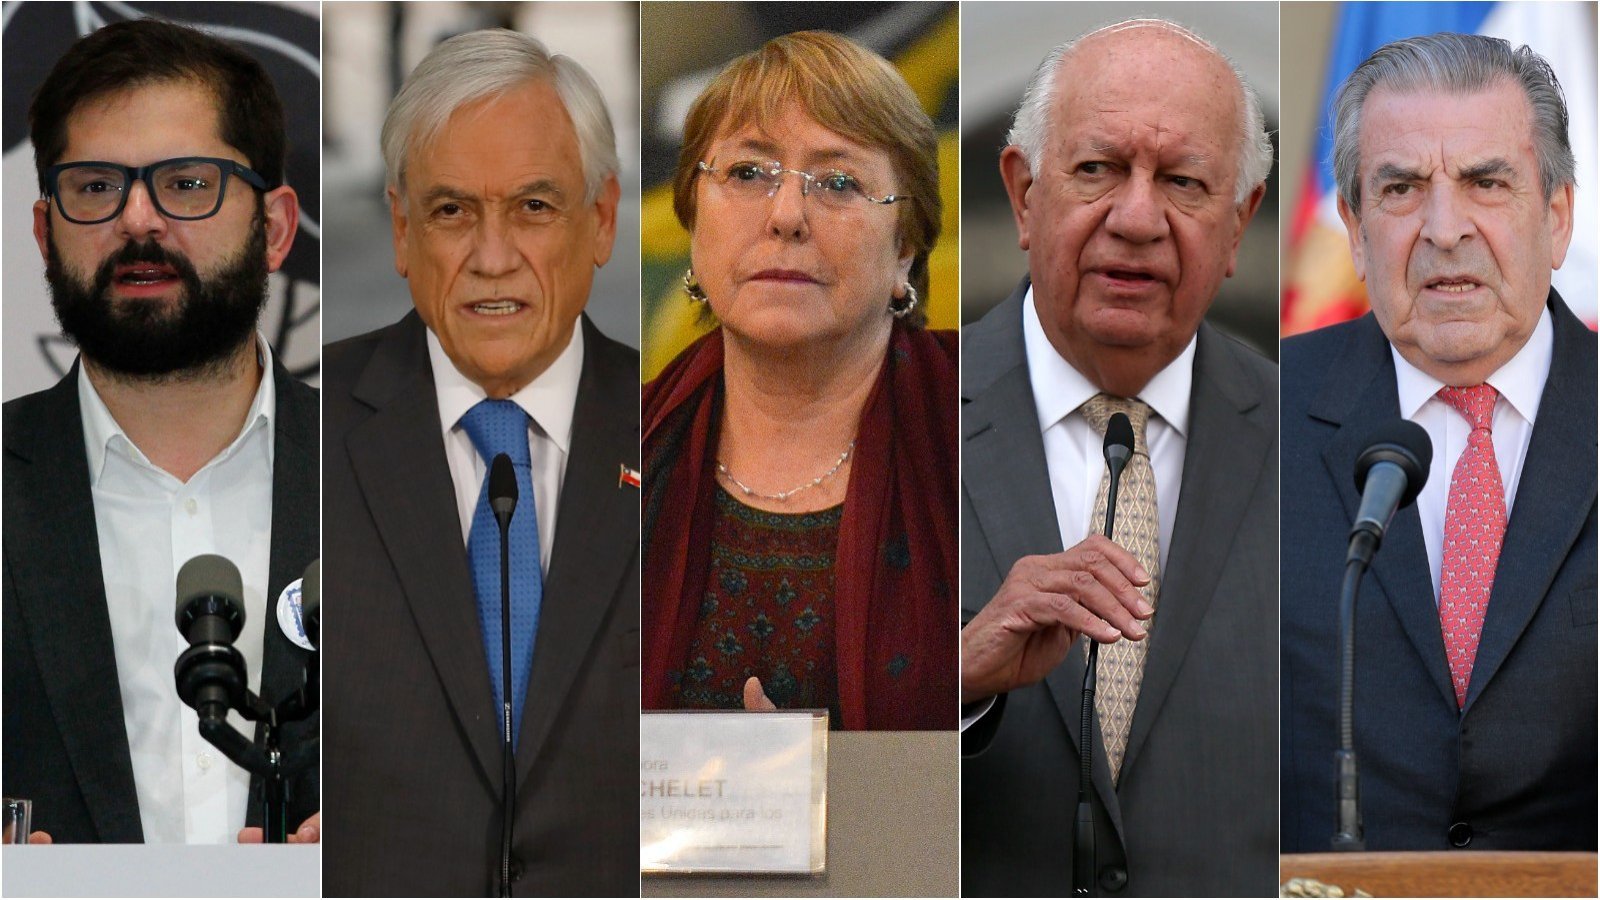 Los presidentes Boric, Piñera, Bachelet, Lagos y Frei votarán en diferentes puntos en el marco del plebiscito